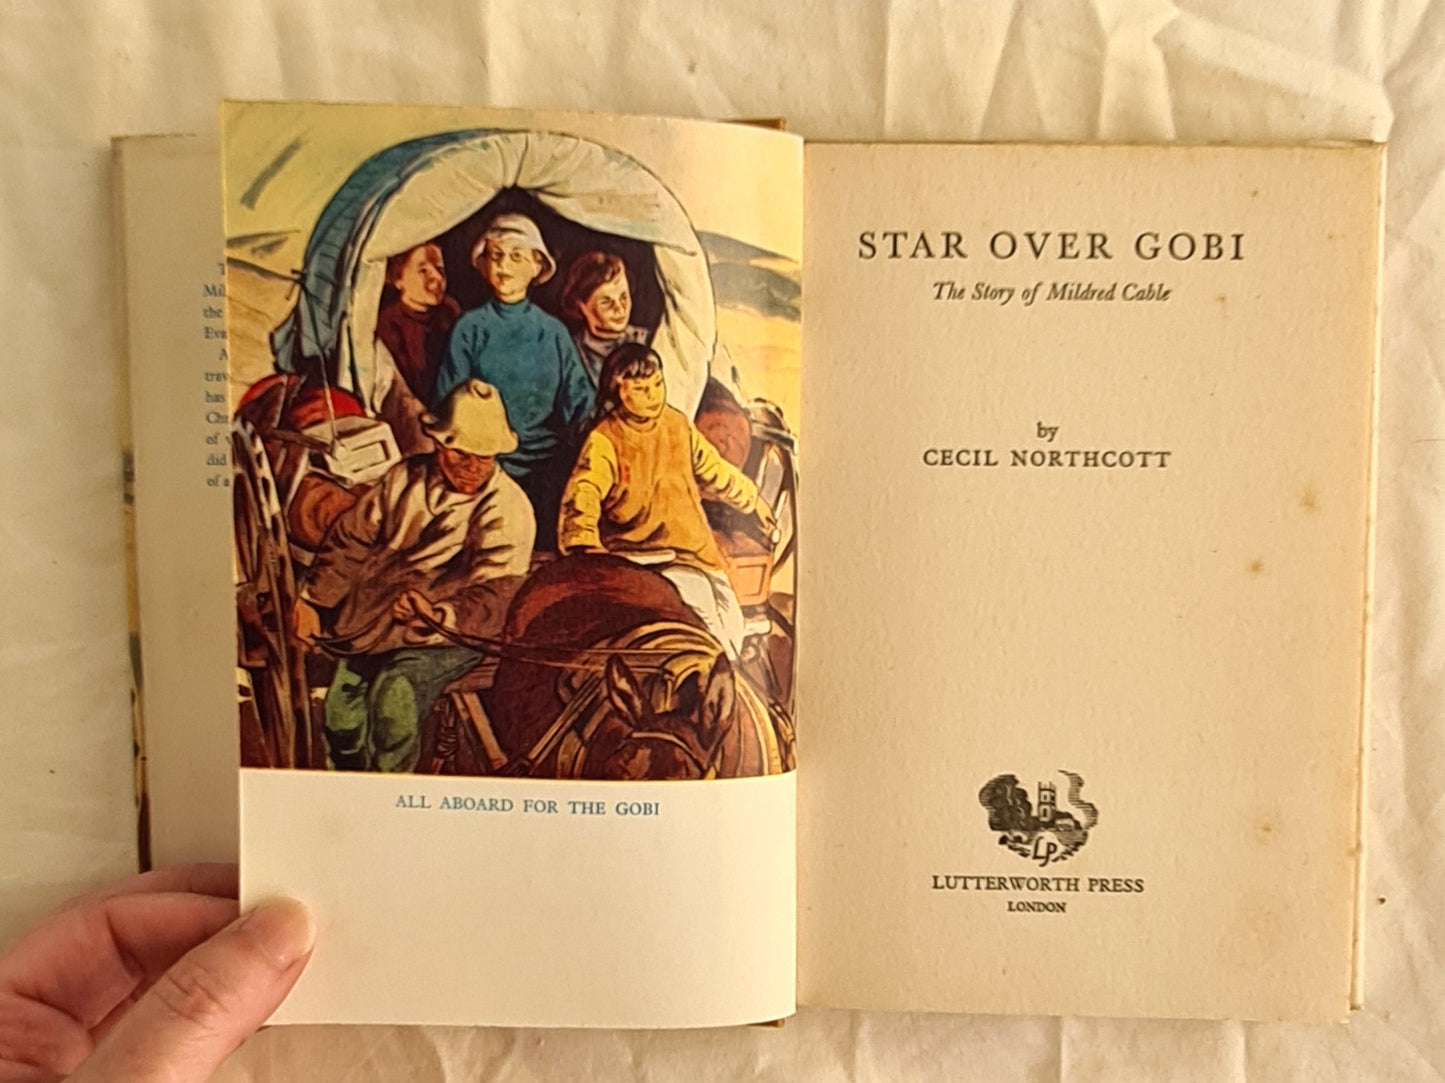 Star over Gobi by Cecil Northcott